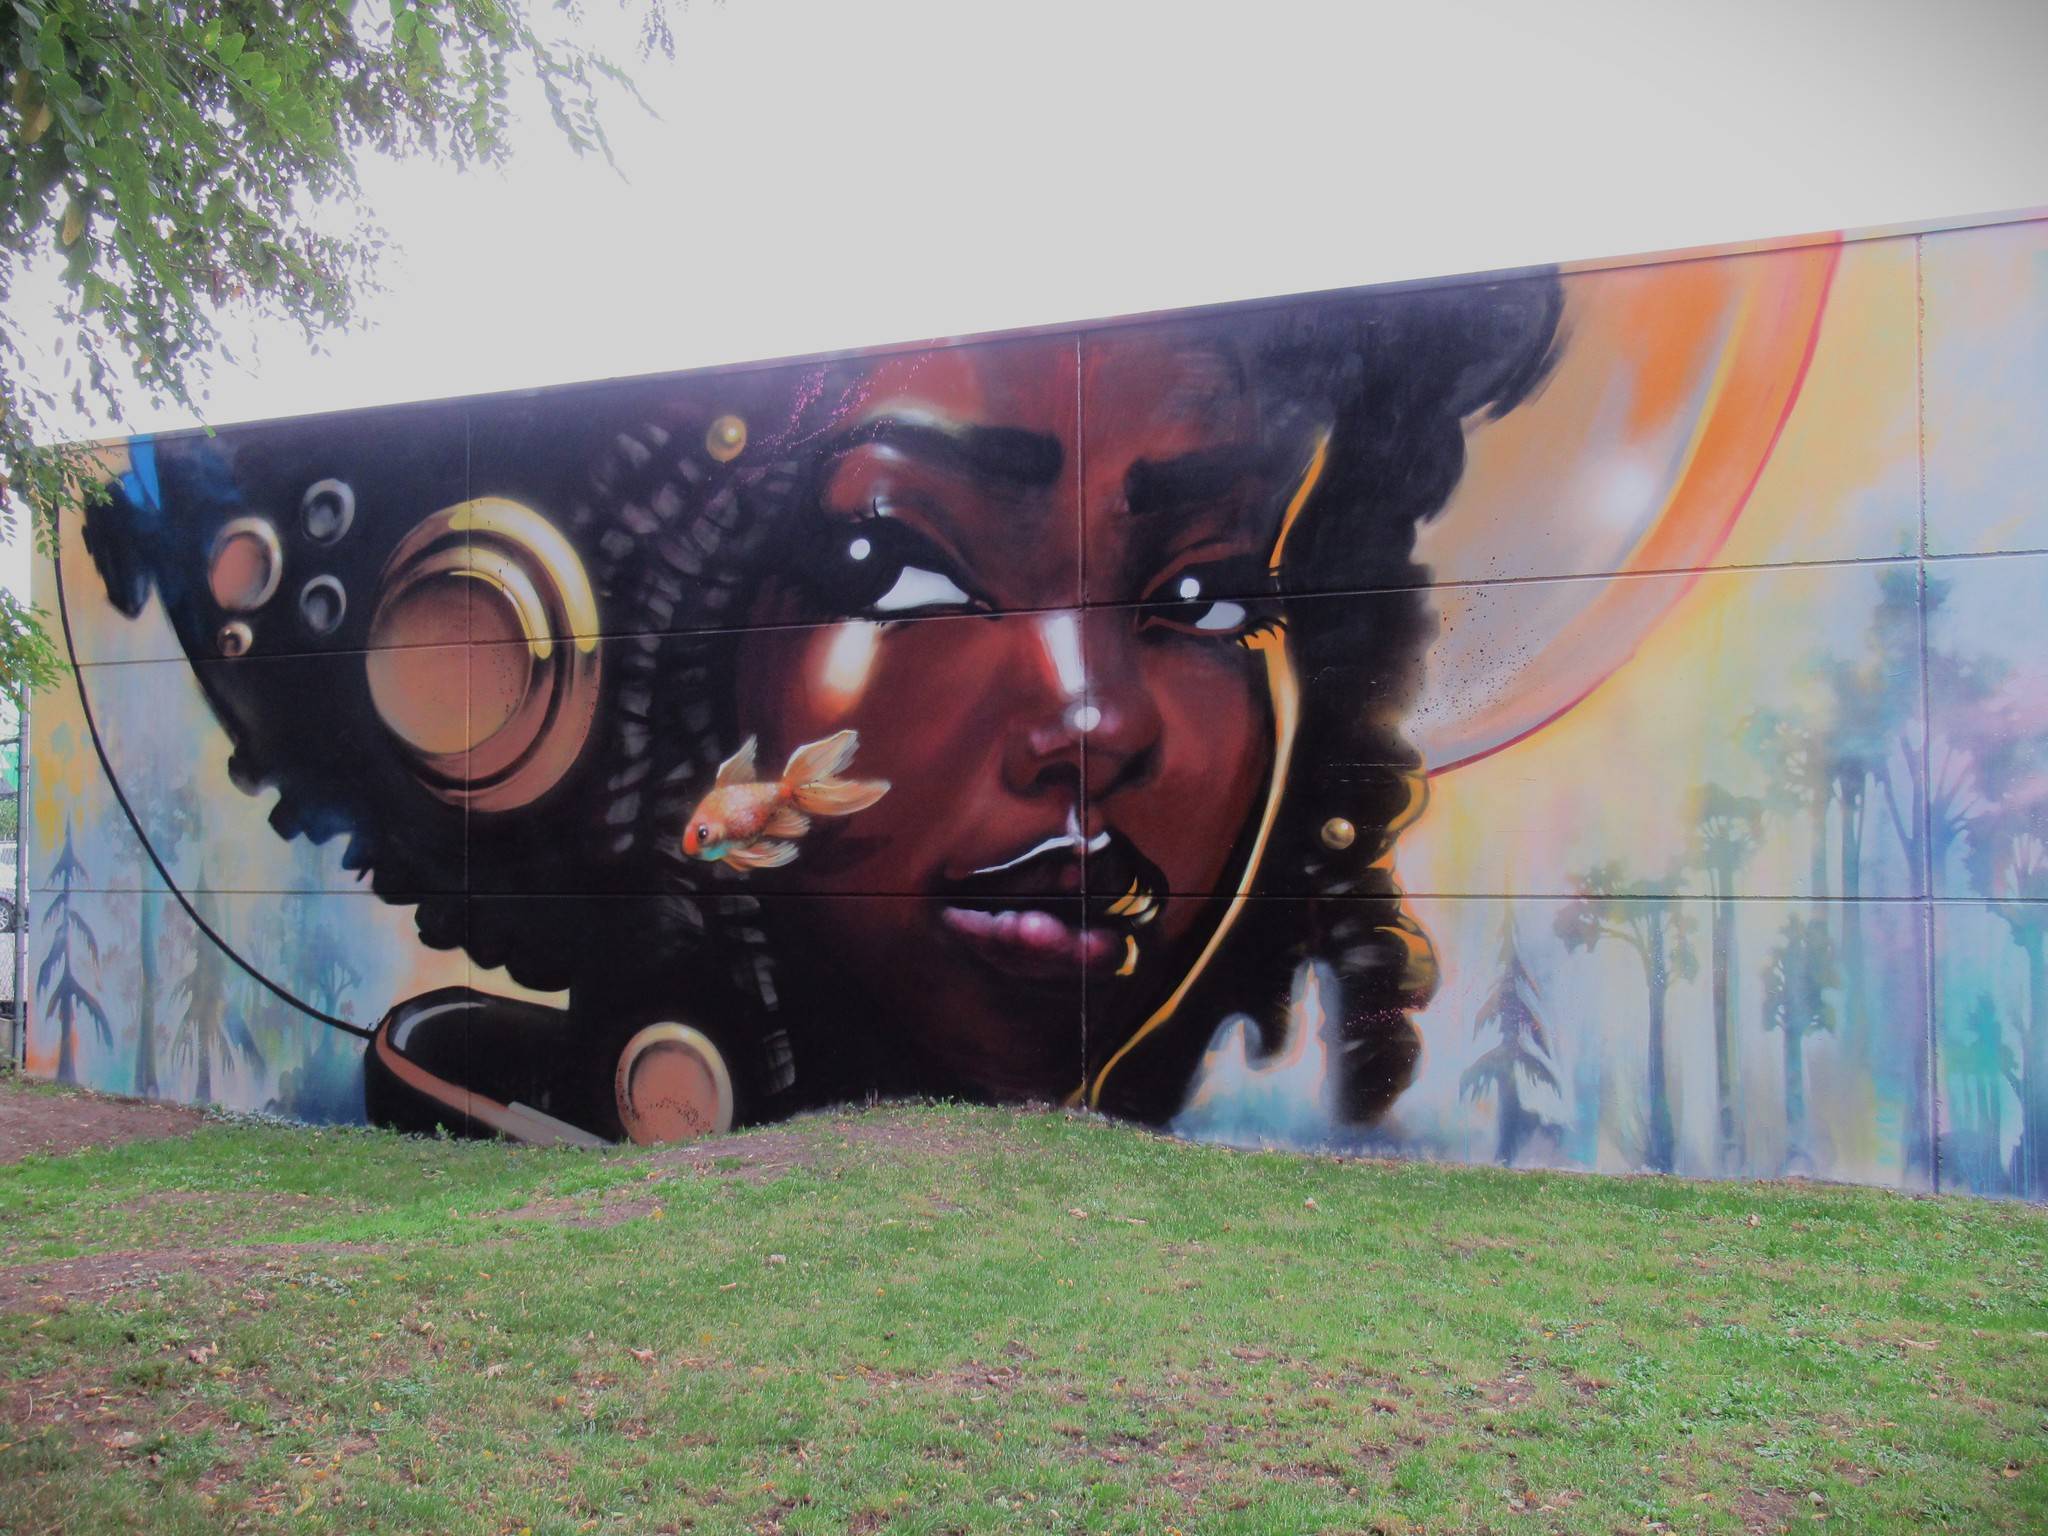 JamzJamezon, Bué The Warrior&mdash;Park Vorkstraat mural